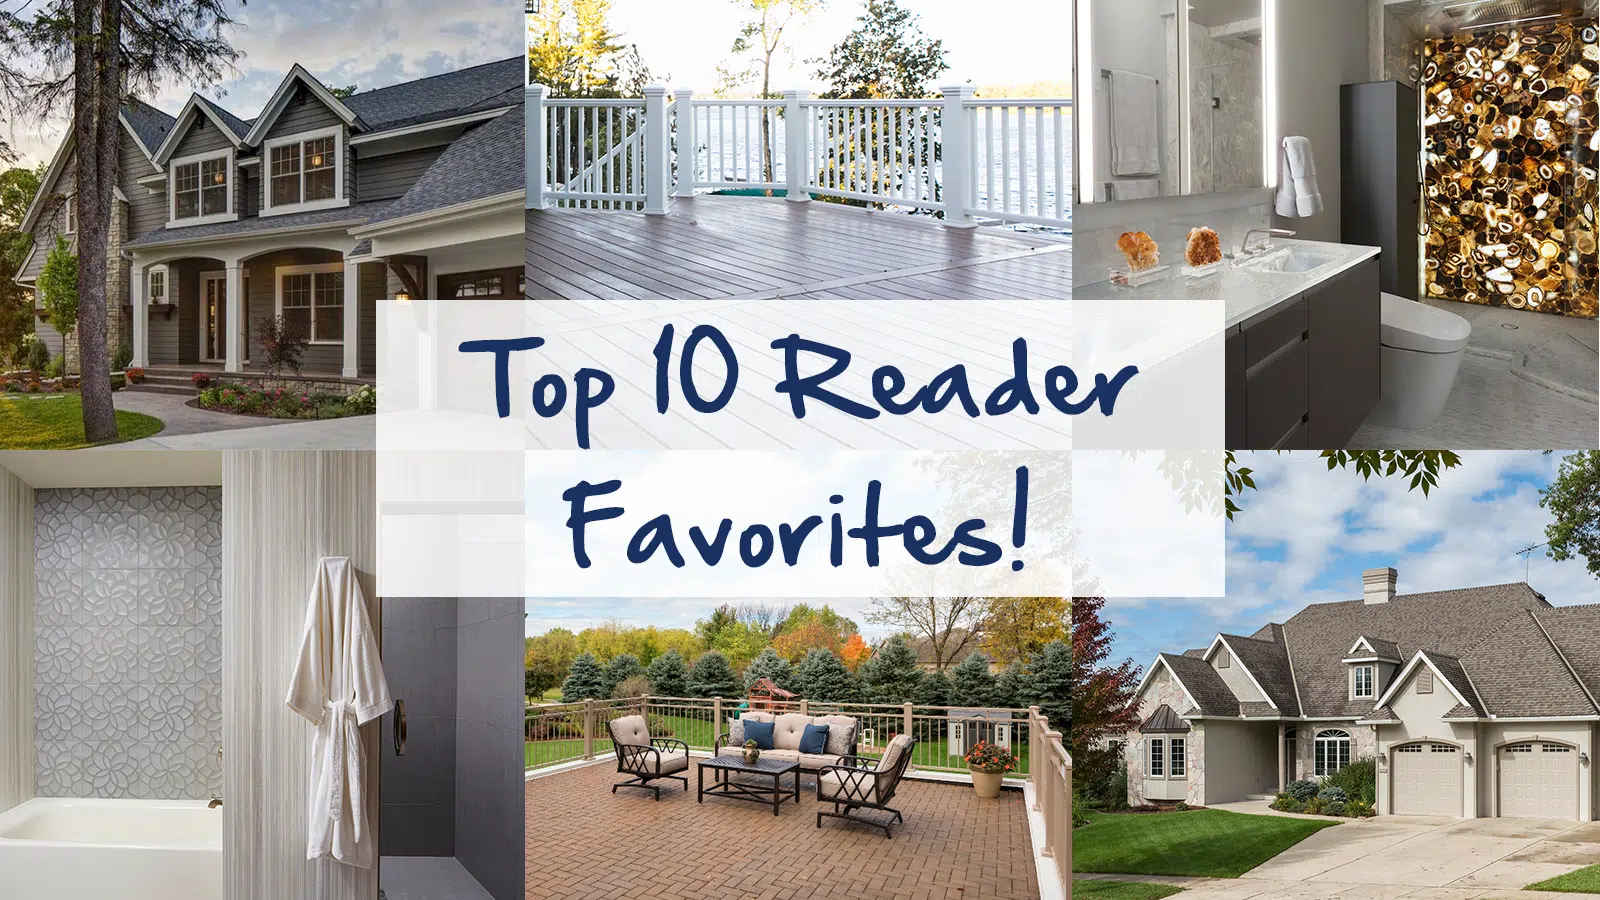 Top 10 Reader Favorites!